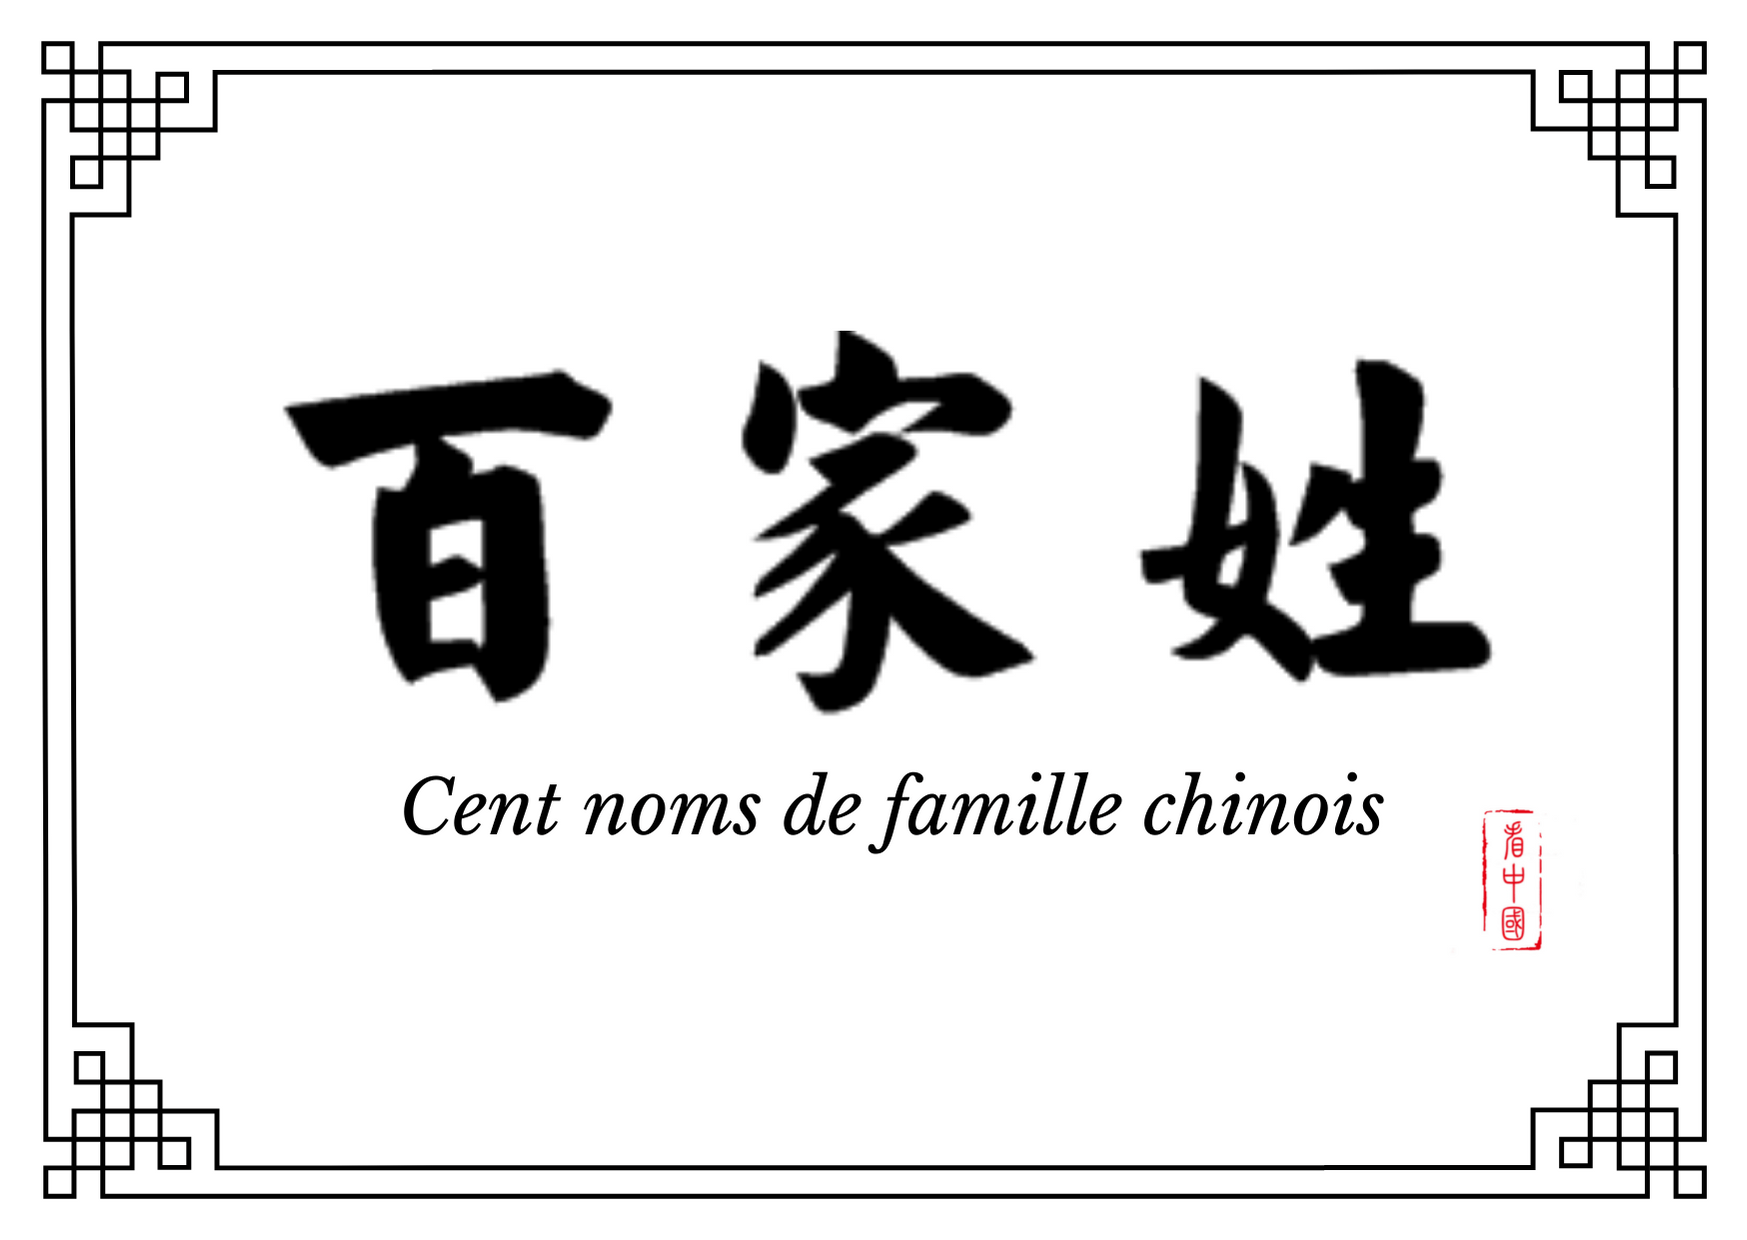 Les noms de famille chinois les plus courants